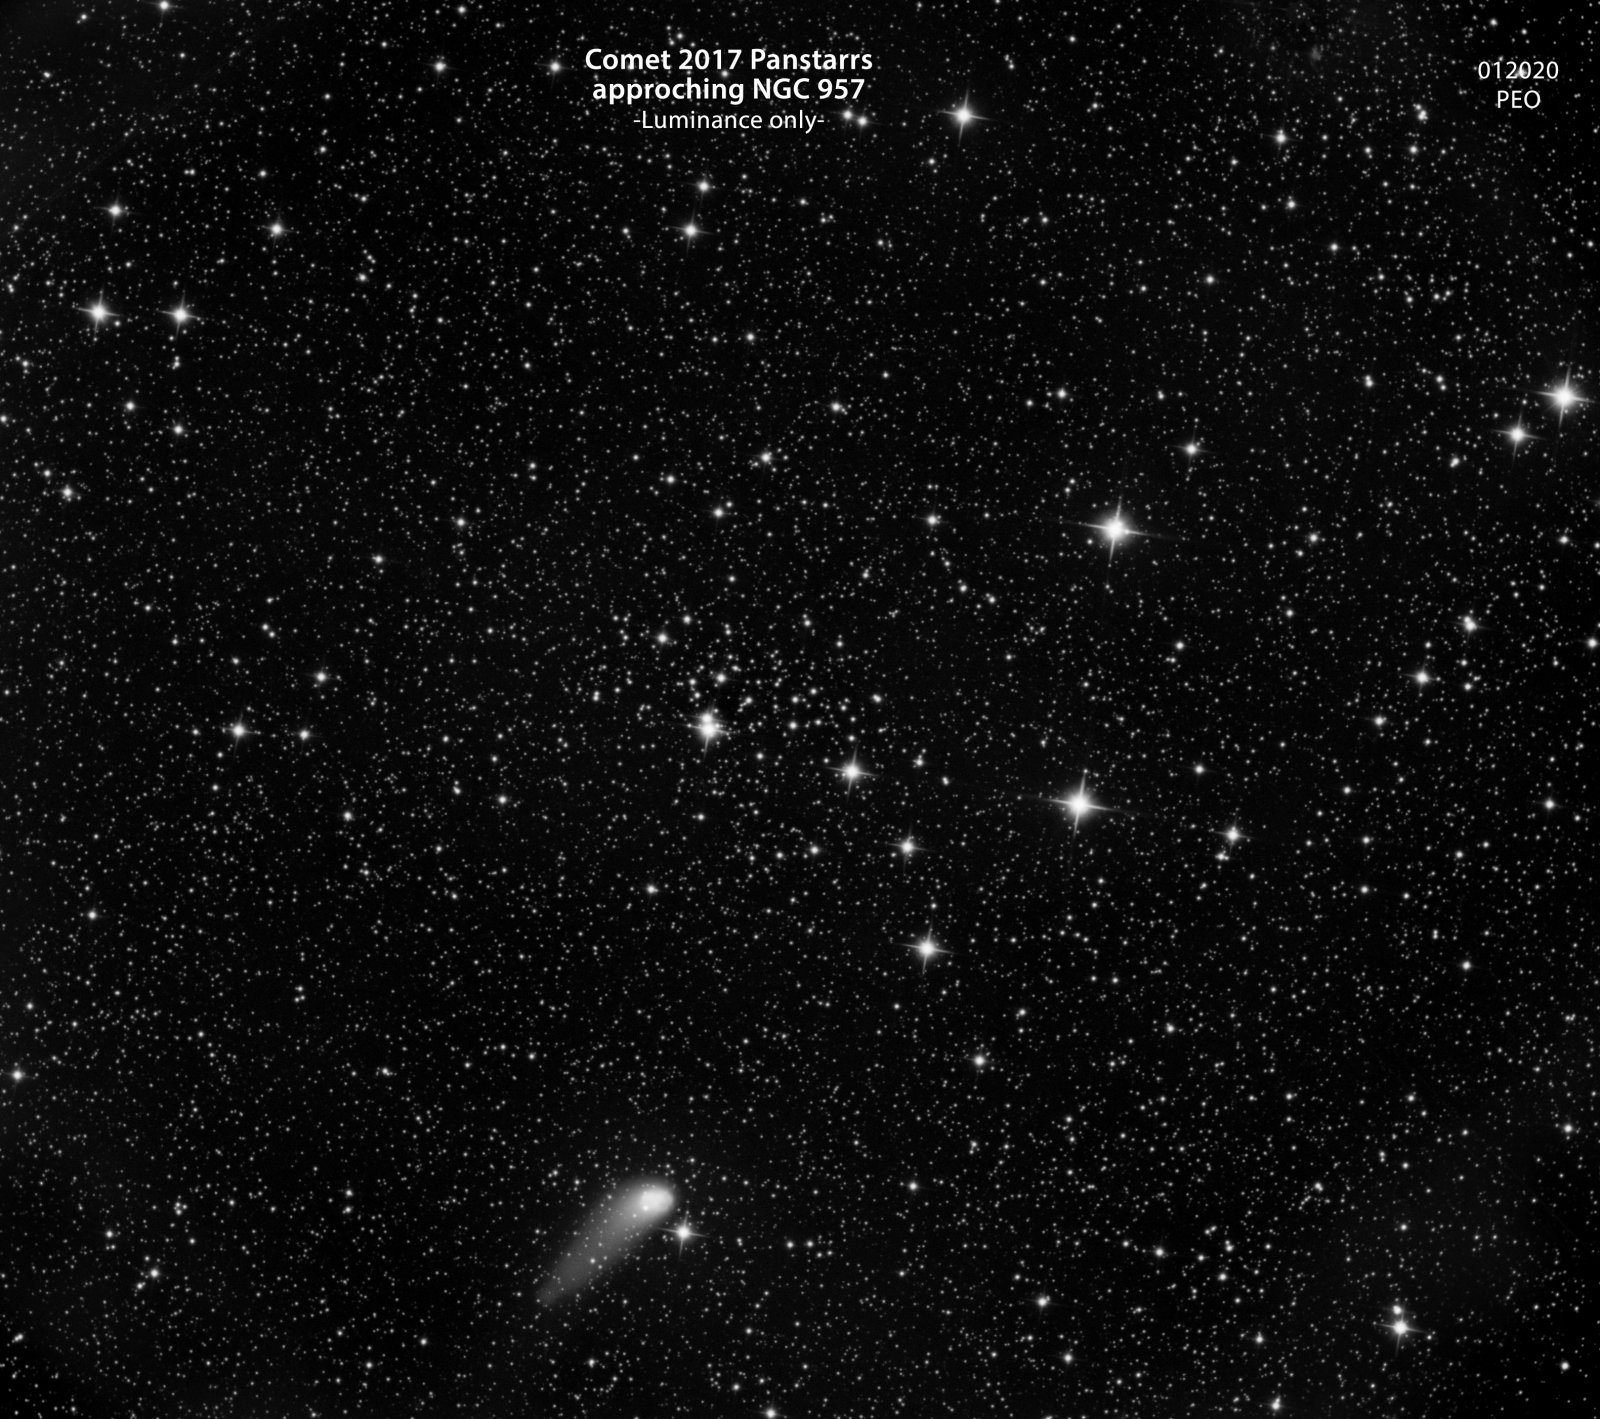 Comet Panstarr